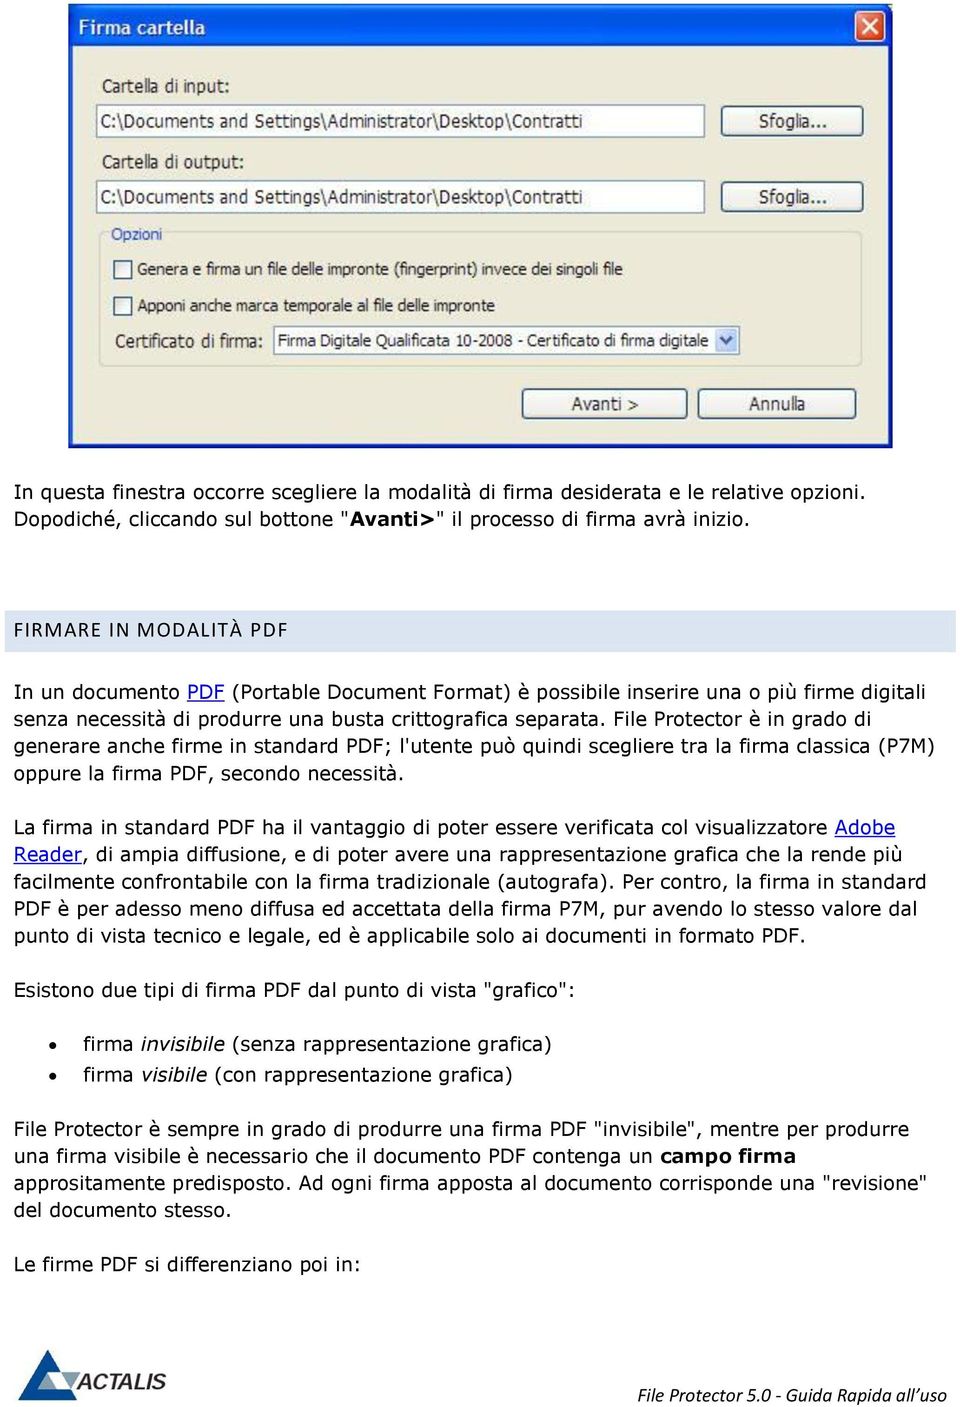 File Protector è in grado di generare anche firme in standard PDF; l'utente può quindi scegliere tra la firma classica (P7M) oppure la firma PDF, secondo necessità.